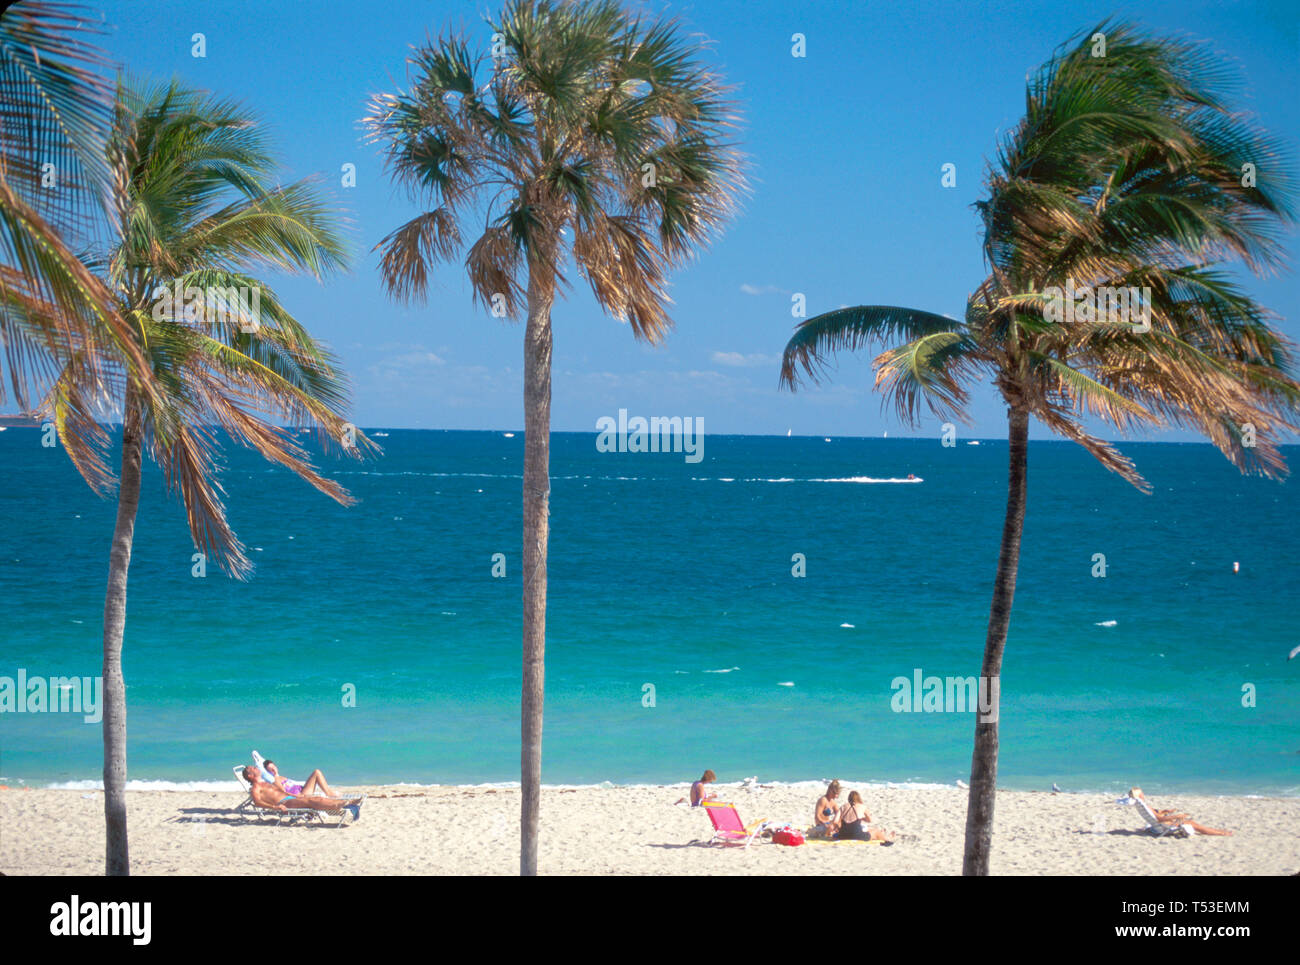 Pi.Fort Lauderdale Floride, plages de plage, sable, surf, Atlantic Shore palmiers soleil, bains de soleil, les visiteurs Voyage tourisme réseau local Banque D'Images